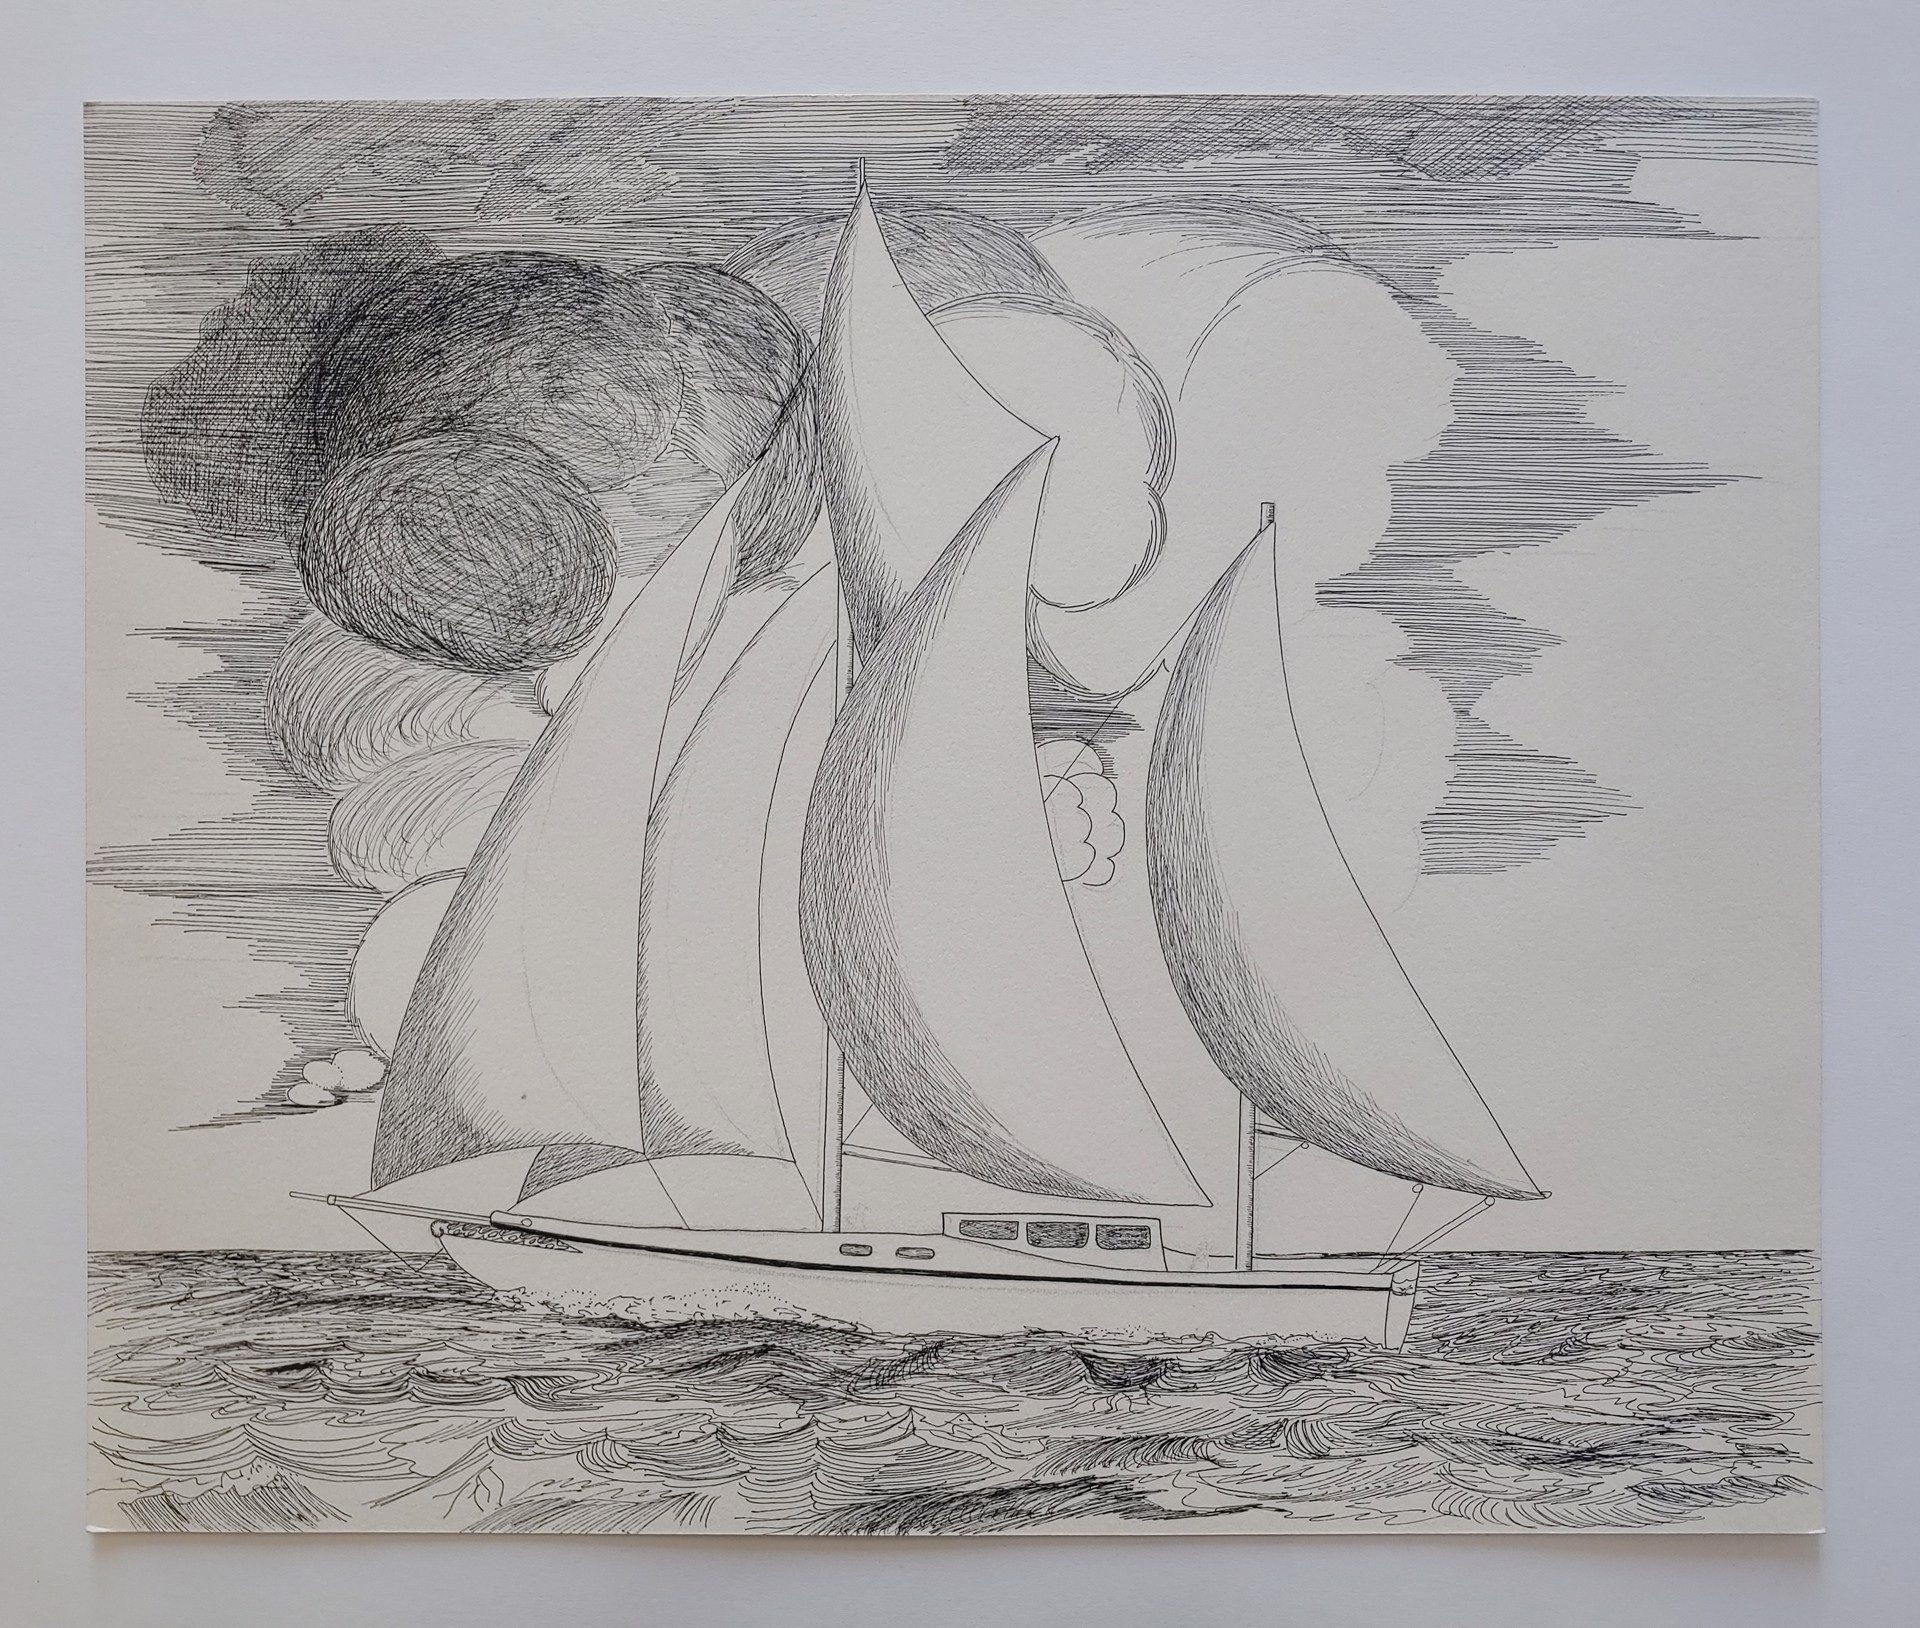 Boat - Drawing by David Amdur